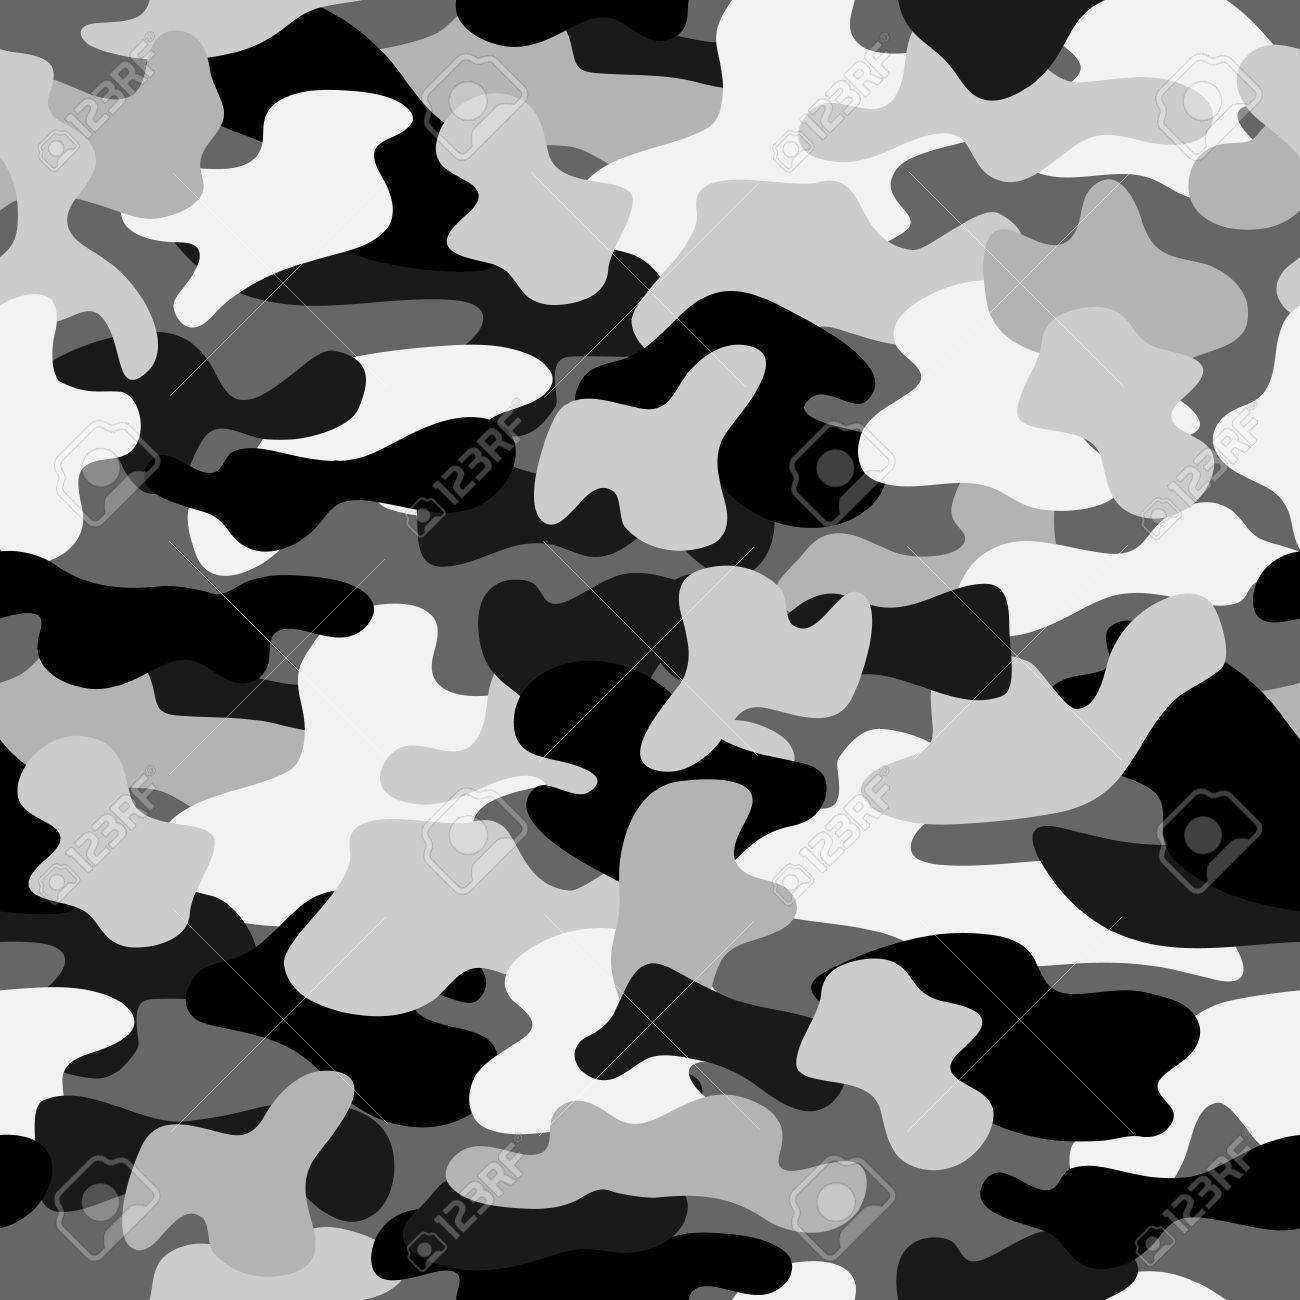 Camouflage Nahtlose Muster In Schwarz Weiss Und Grau Farben Lizenzfreie Fotos Bilder Und Stock Fotografie Image 78883709